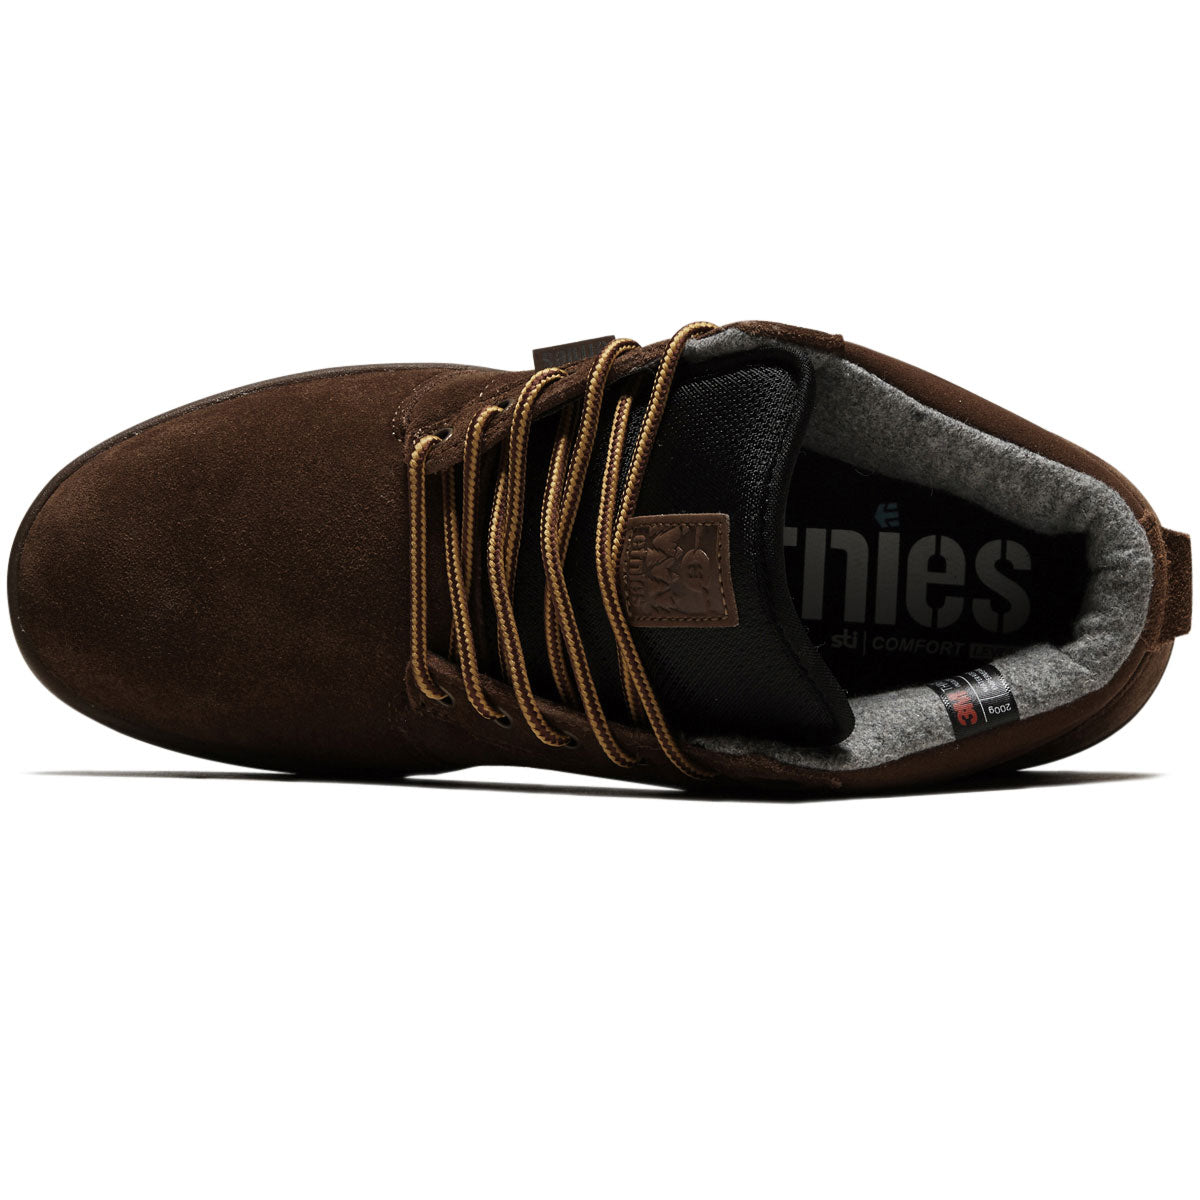 Etnies Jefferson Mtw Shoes - Brown/Gum image 3